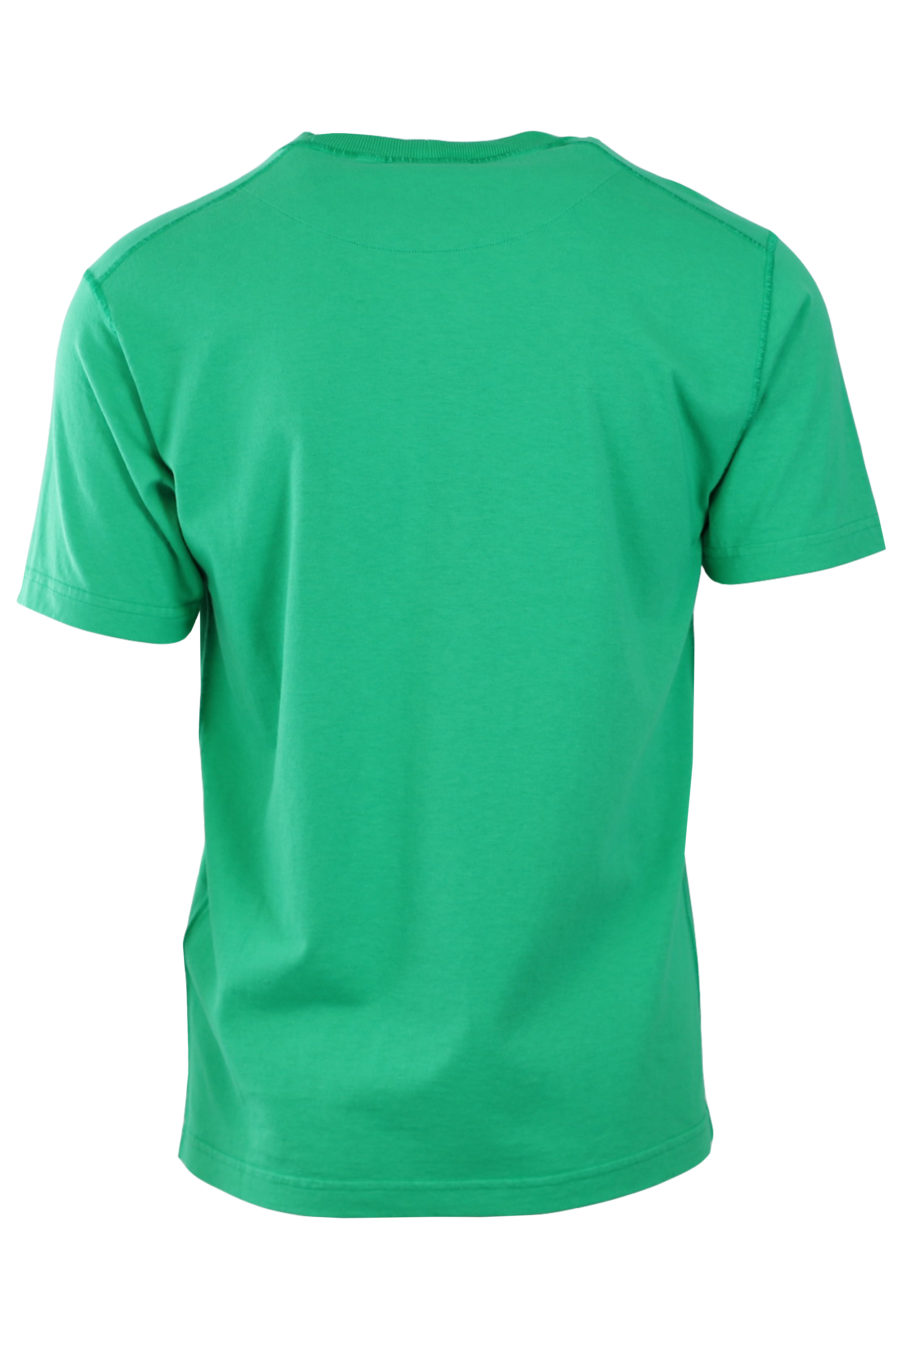 Camiseta verde con parche de la marca - bcf26c42d66bd5969e9c919f9d6ba05b2956b040